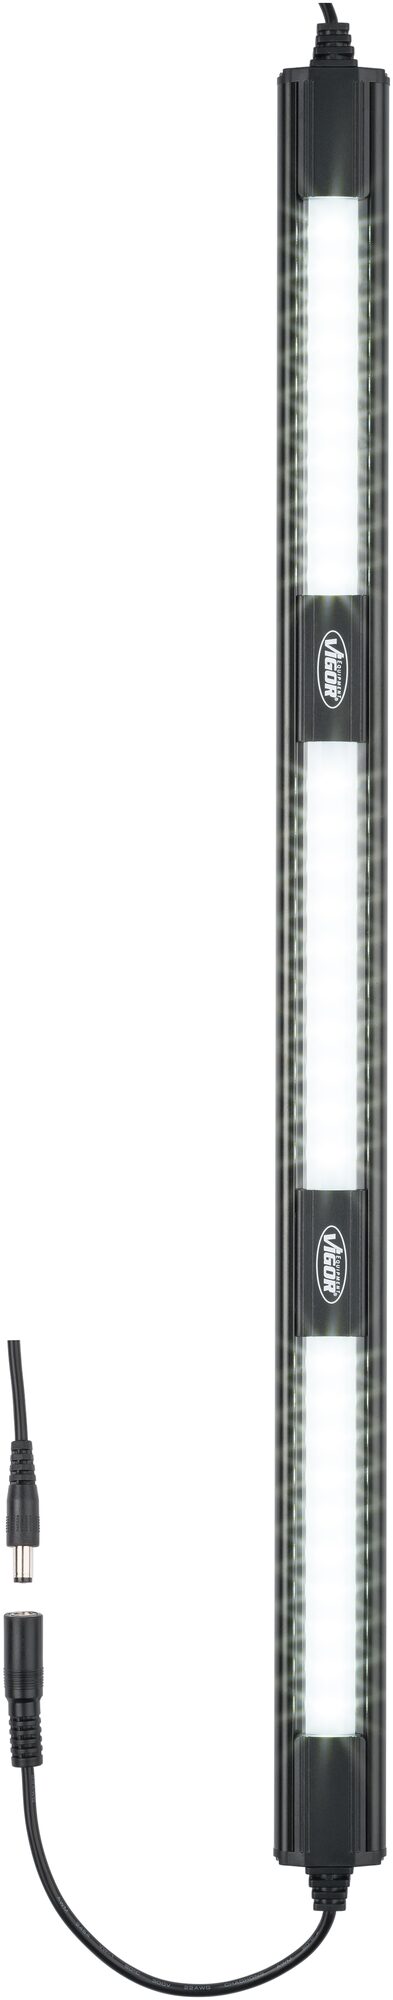 VIGOR LED Lichtleiste · Erweiterung · V7283